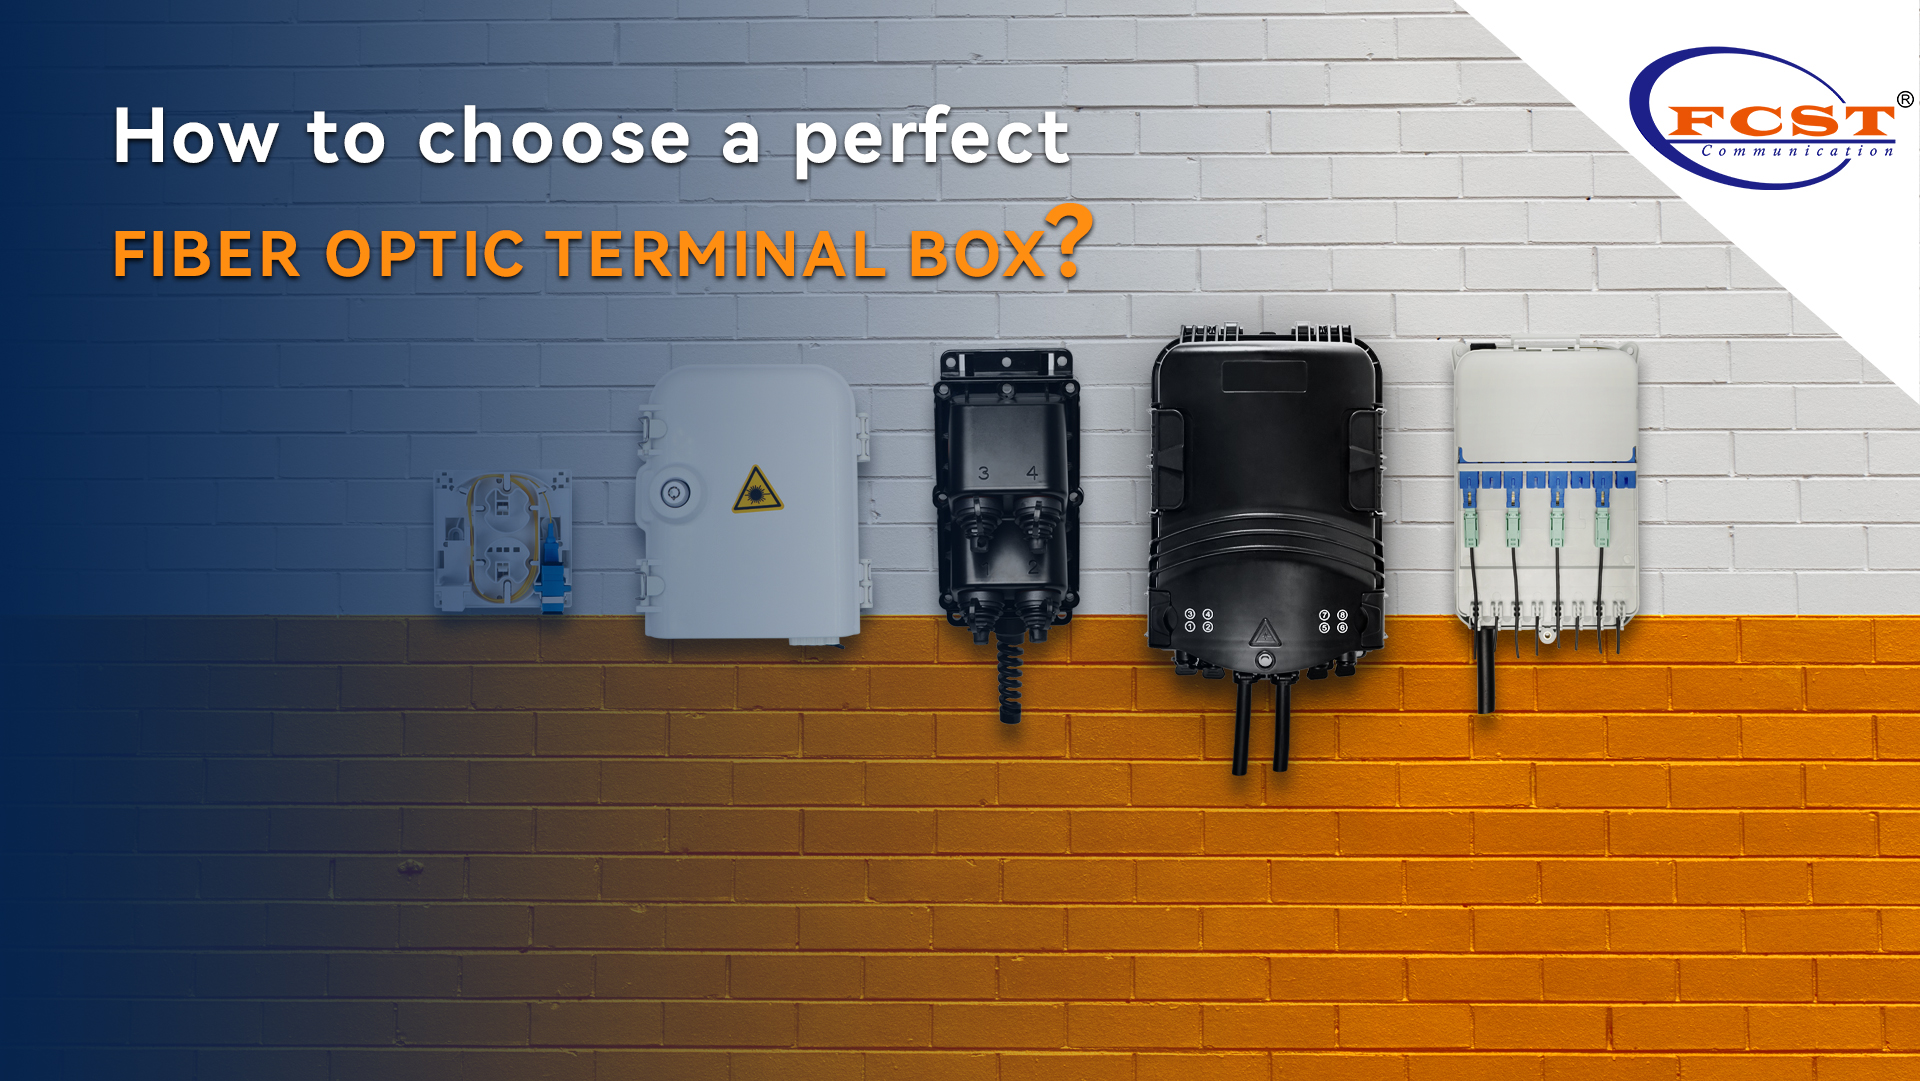 Como escolher uma caixa de terminal de fibra óptica perfeita?